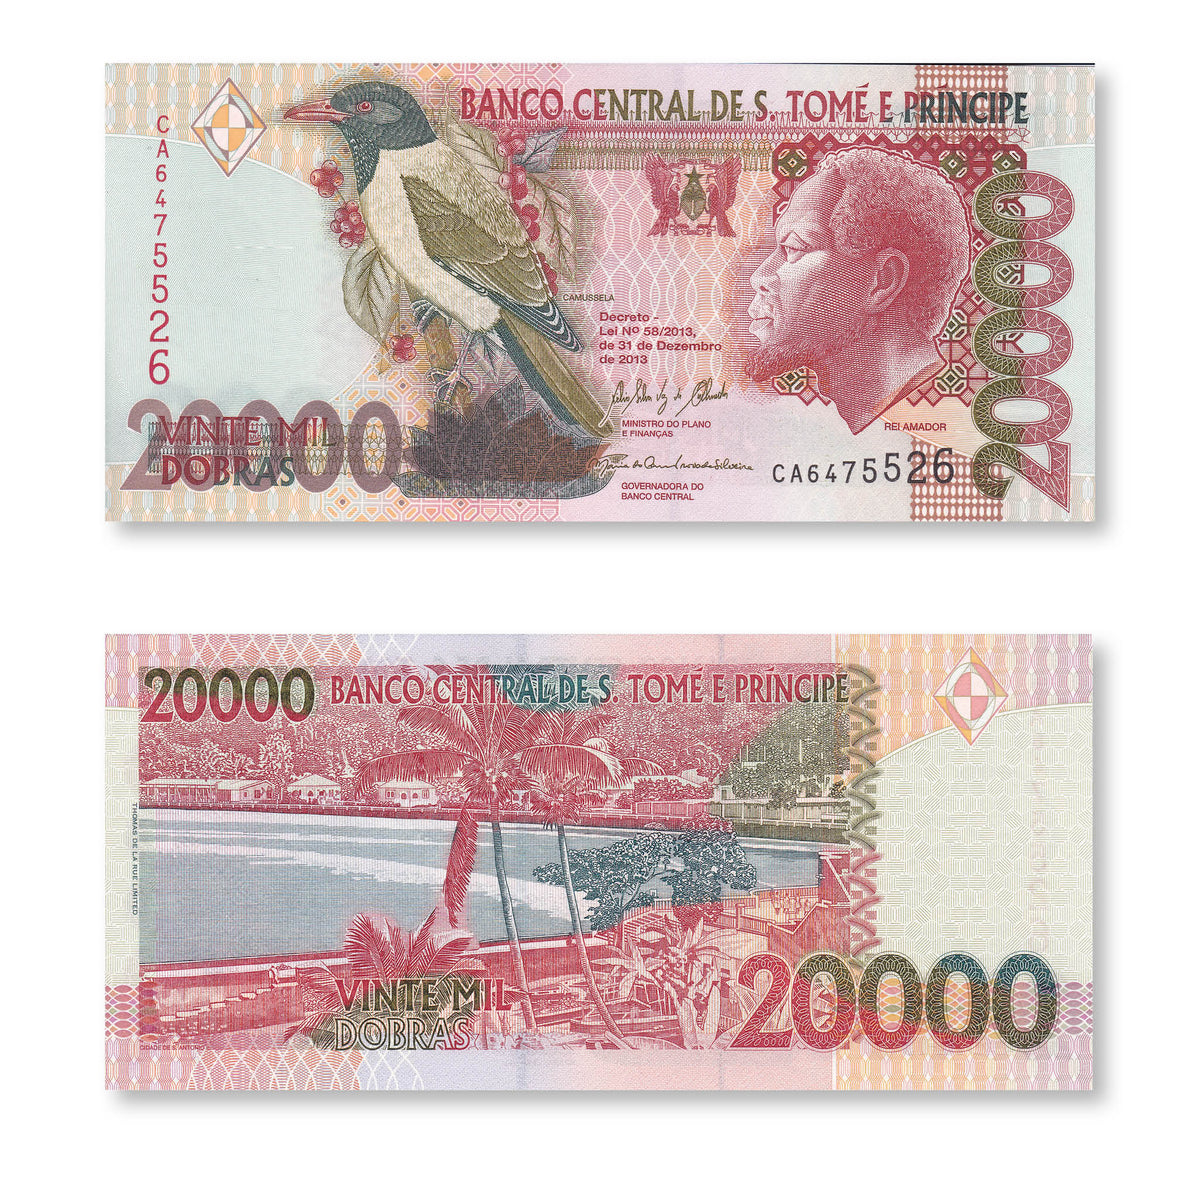 São Tomé & Príncipe 20000 Dobras, 2013, B305e, P67e, UNC - Robert's World Money - World Banknotes